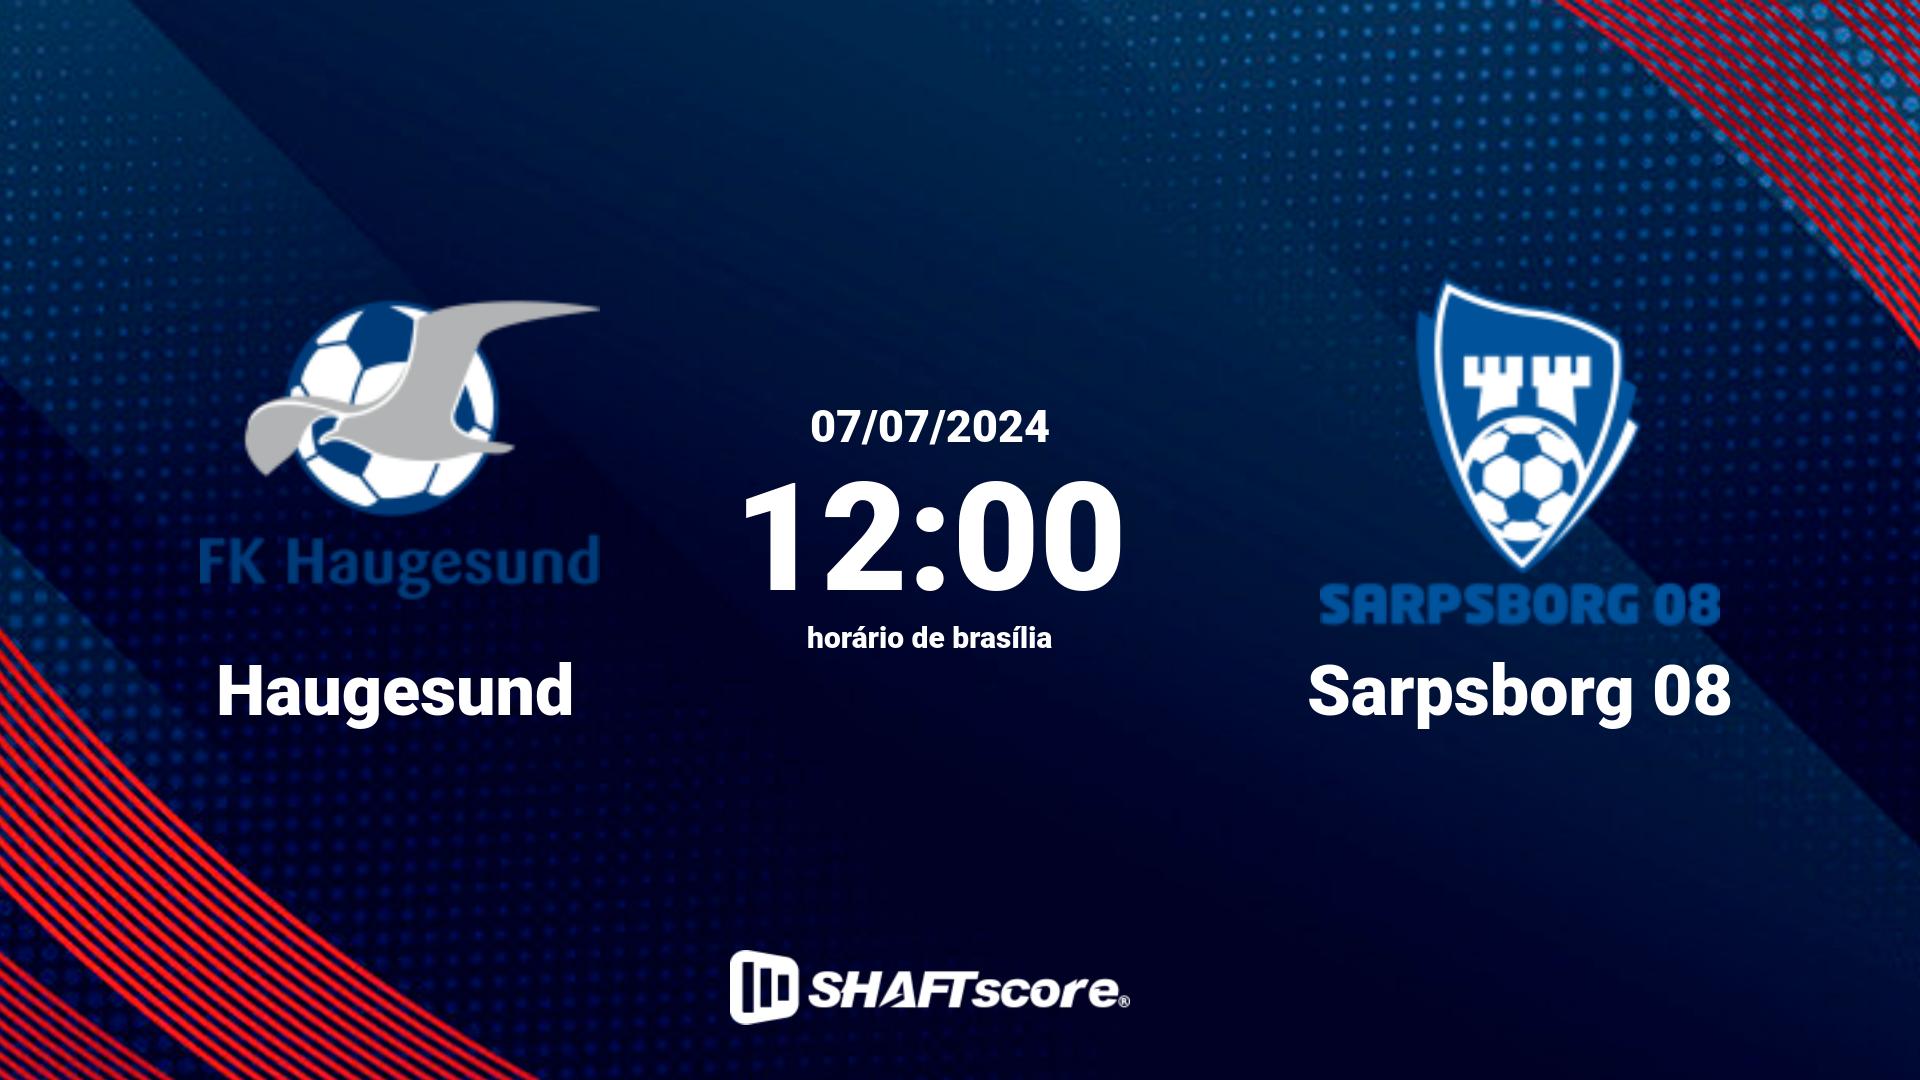 Estatísticas do jogo Haugesund vs Sarpsborg 08 07.07 12:00